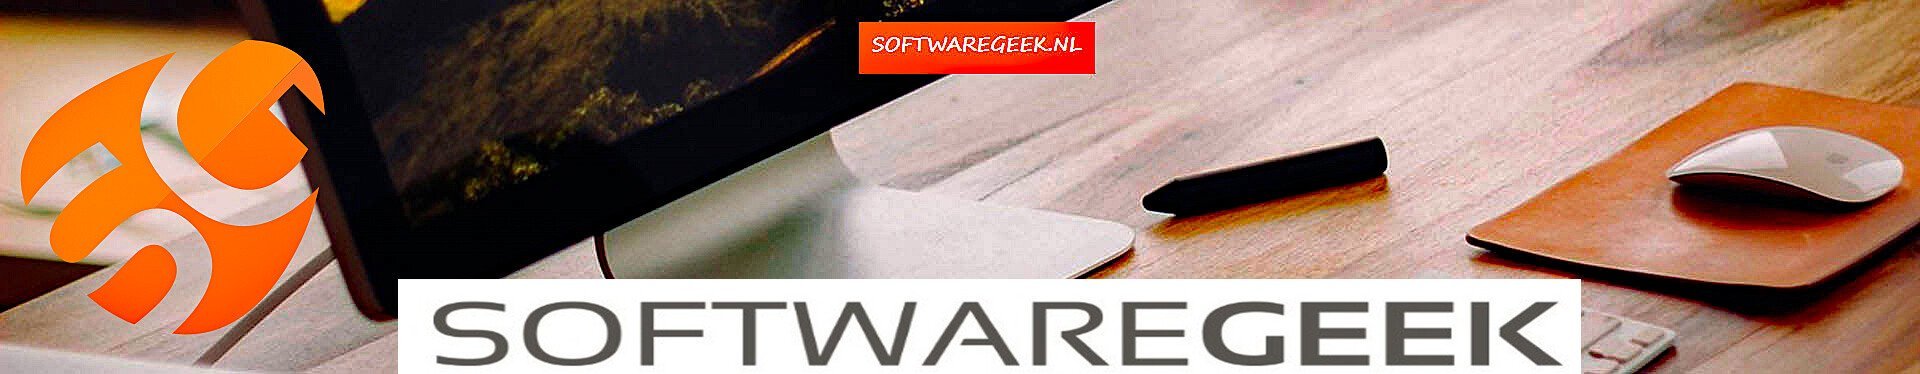 SoftwareGeek.nl